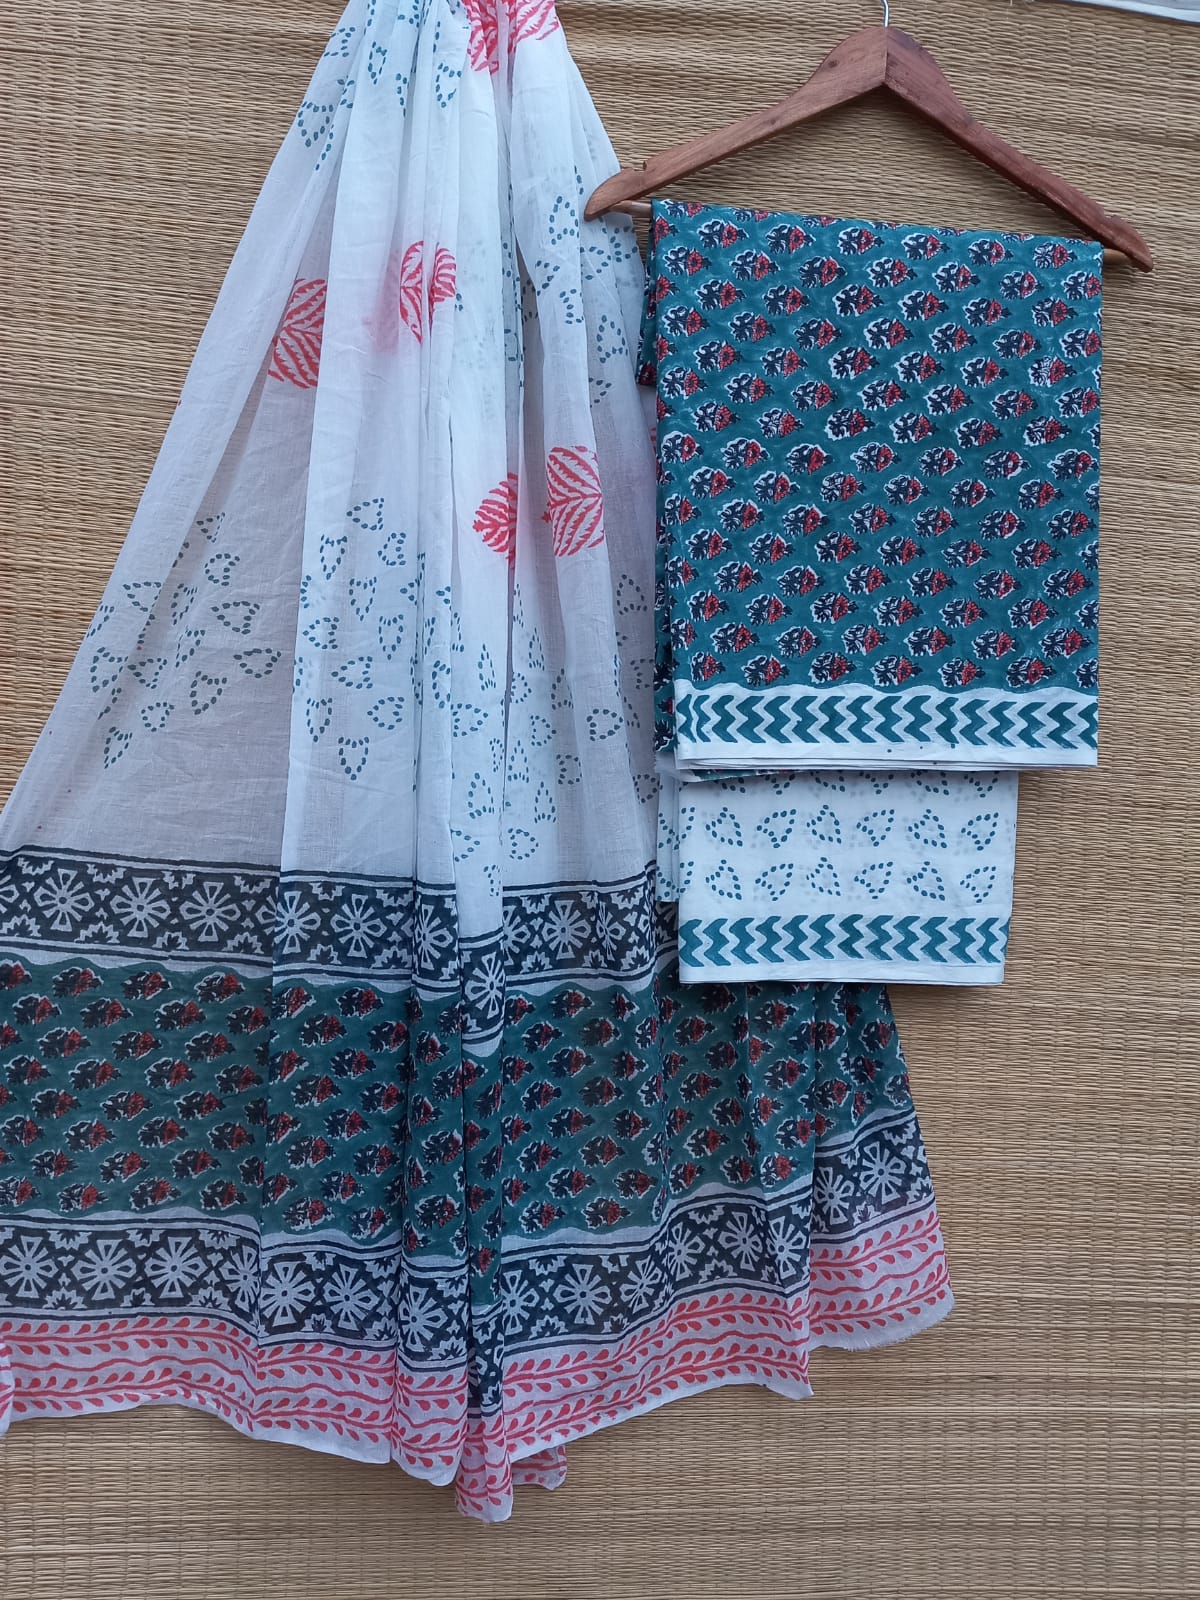 Hand Block Cotton Unstitched Salwar Suit With Cotton/Mulmul Dupatta - JBCM777